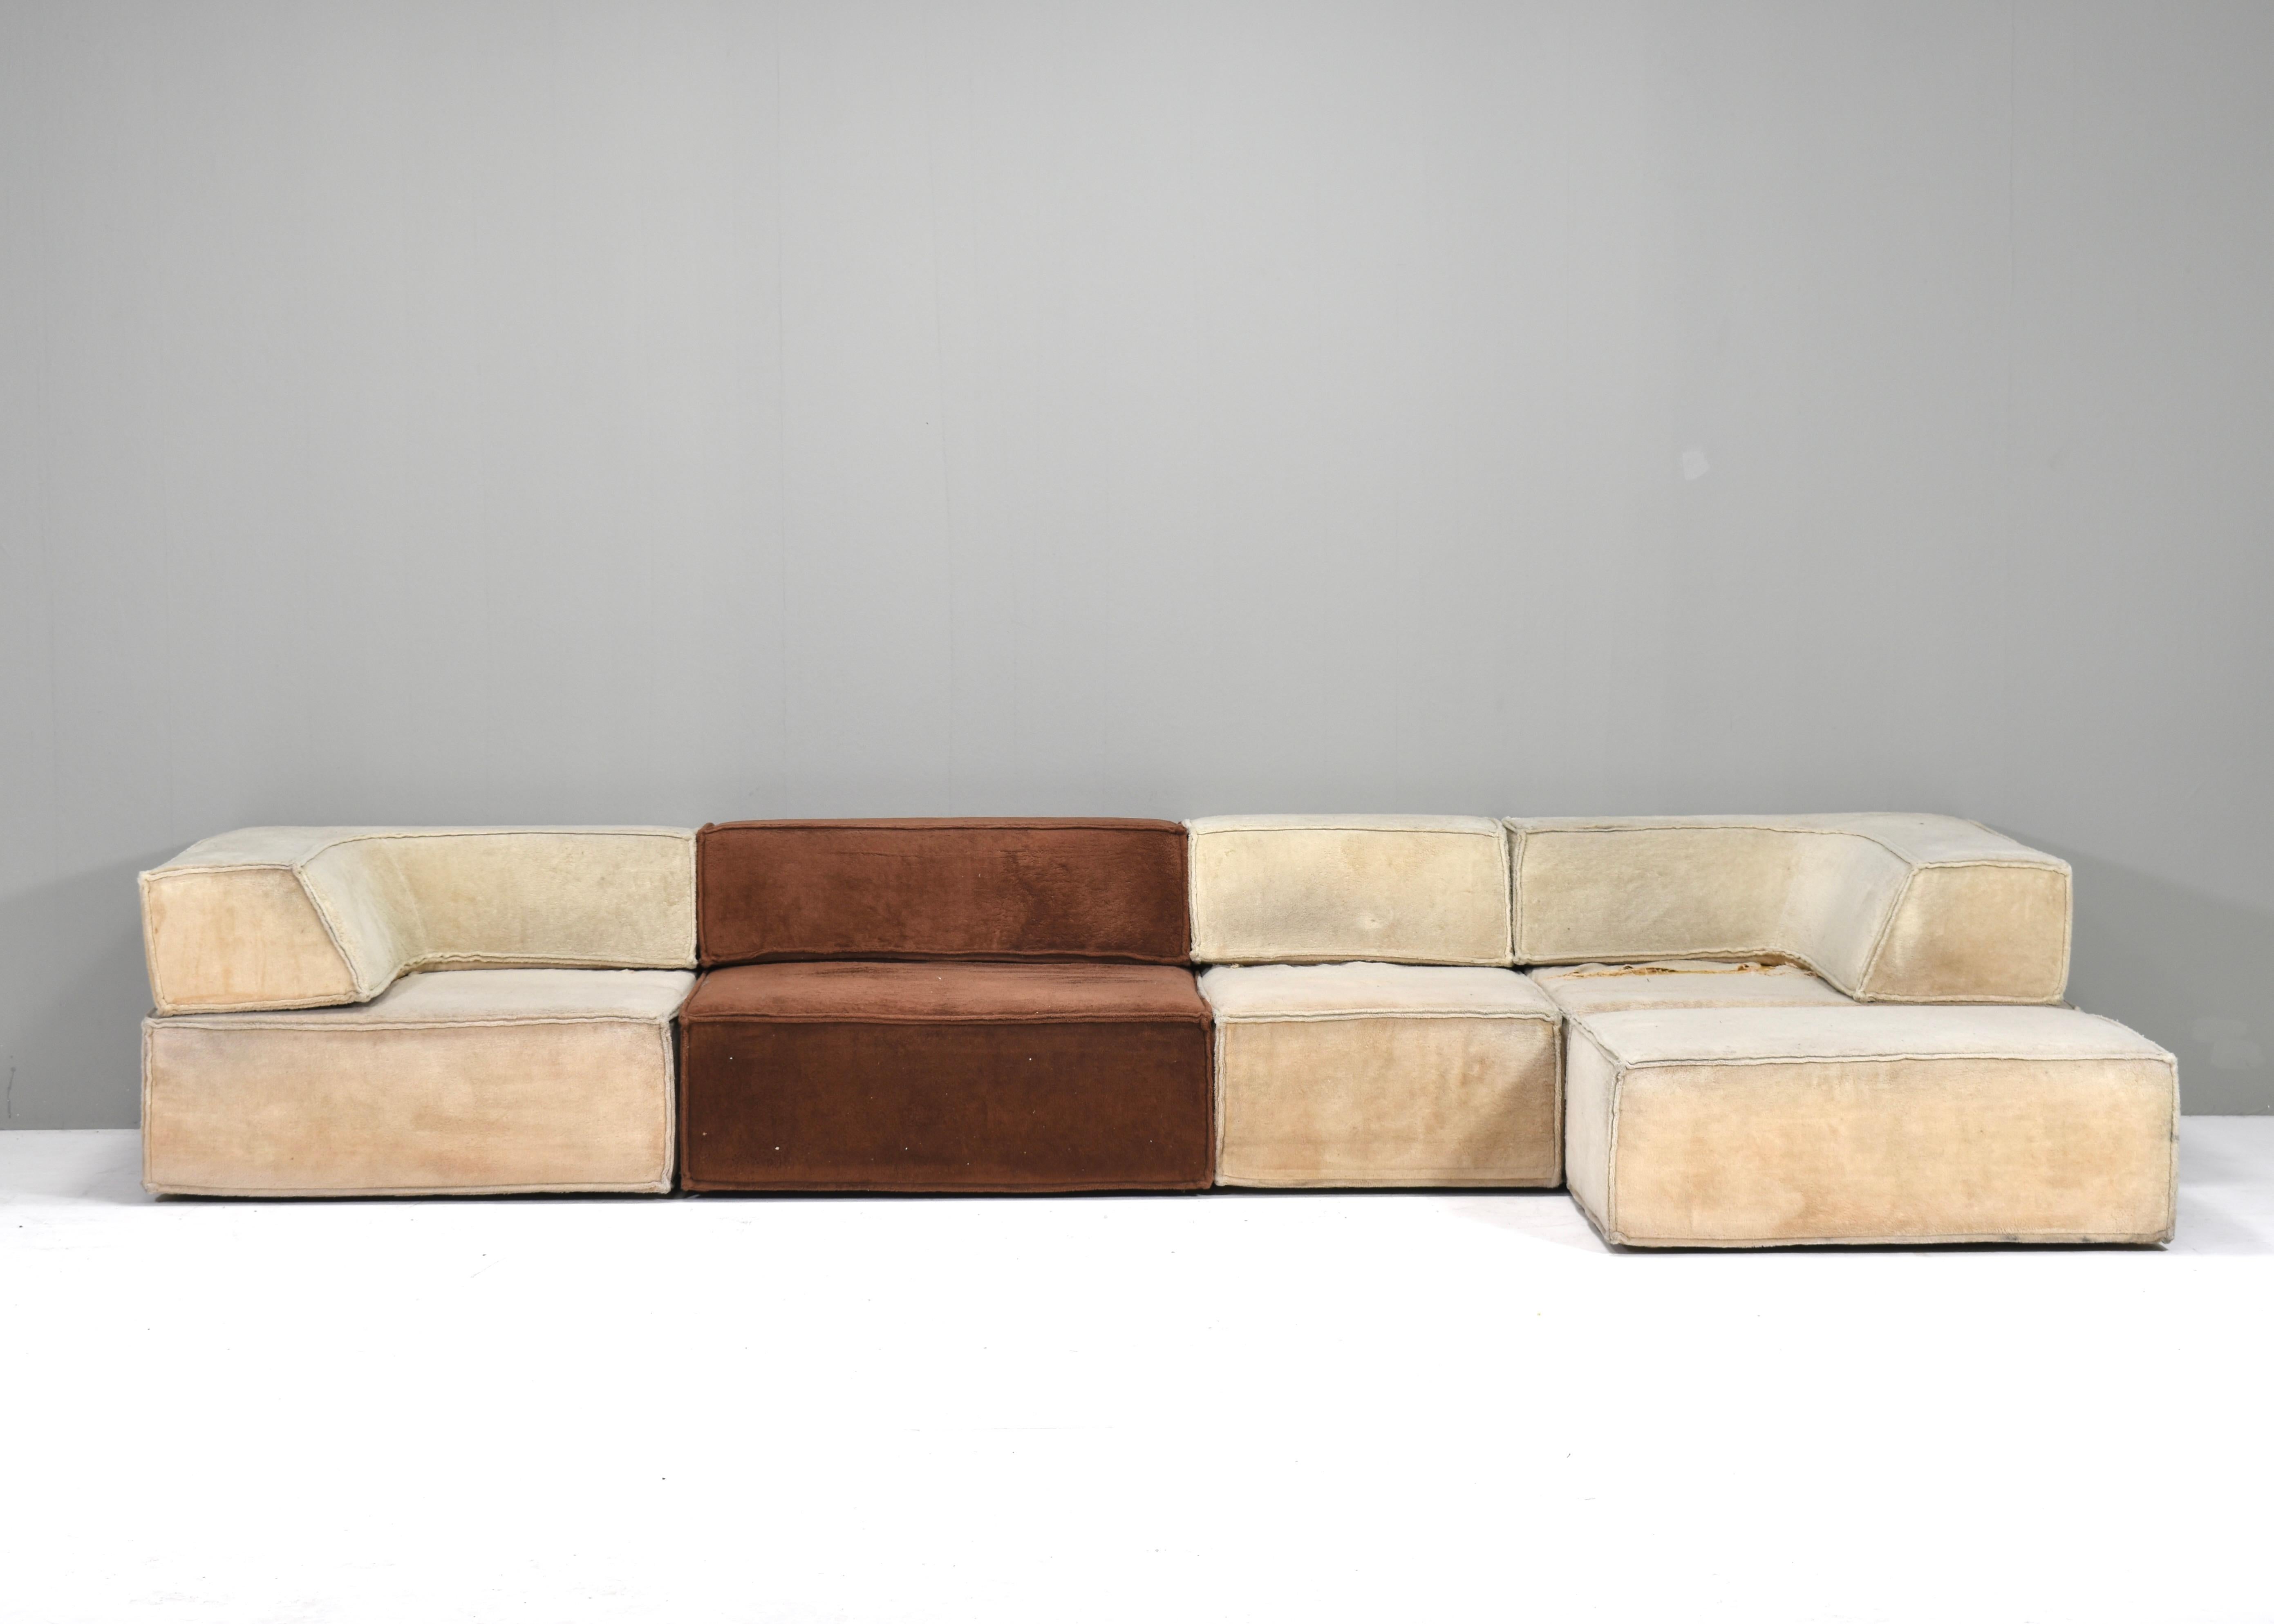 Querformatiges Sofa, entworfen von der Schweizer Designergruppe Form AG und in den 1970er Jahren von COR, Deutschland, hergestellt.
MUSS NEU GEPOLSTERT WERDEN. Fragen Sie uns nach den Möglichkeiten.
Der Preis versteht sich ohne Polsterung und